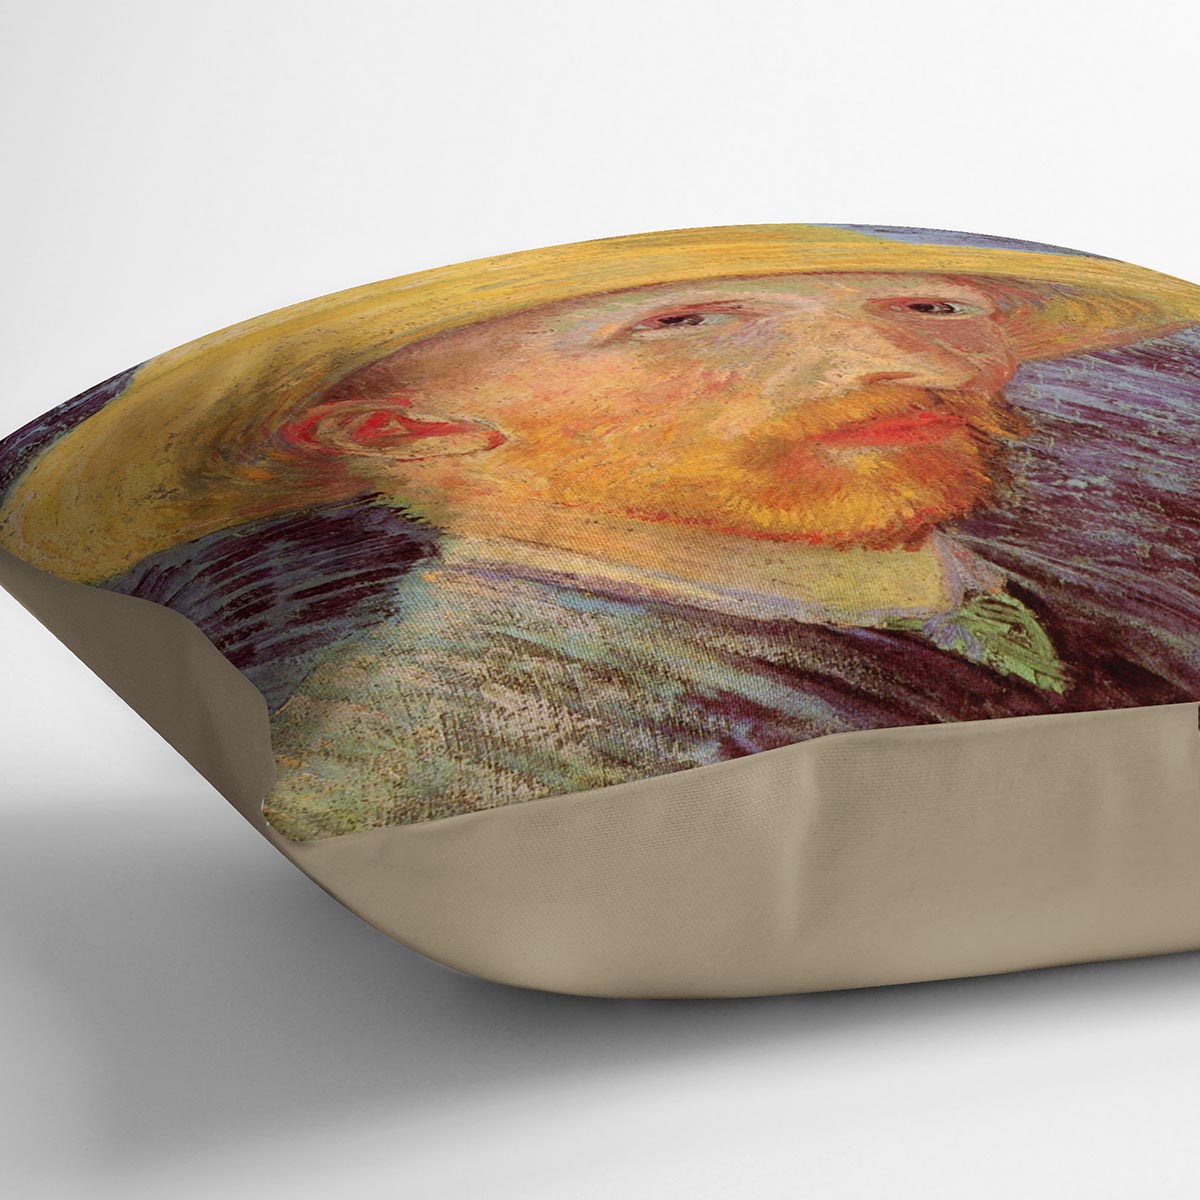 Self-Portrait with Straw Hat by Van Gogh Cushion